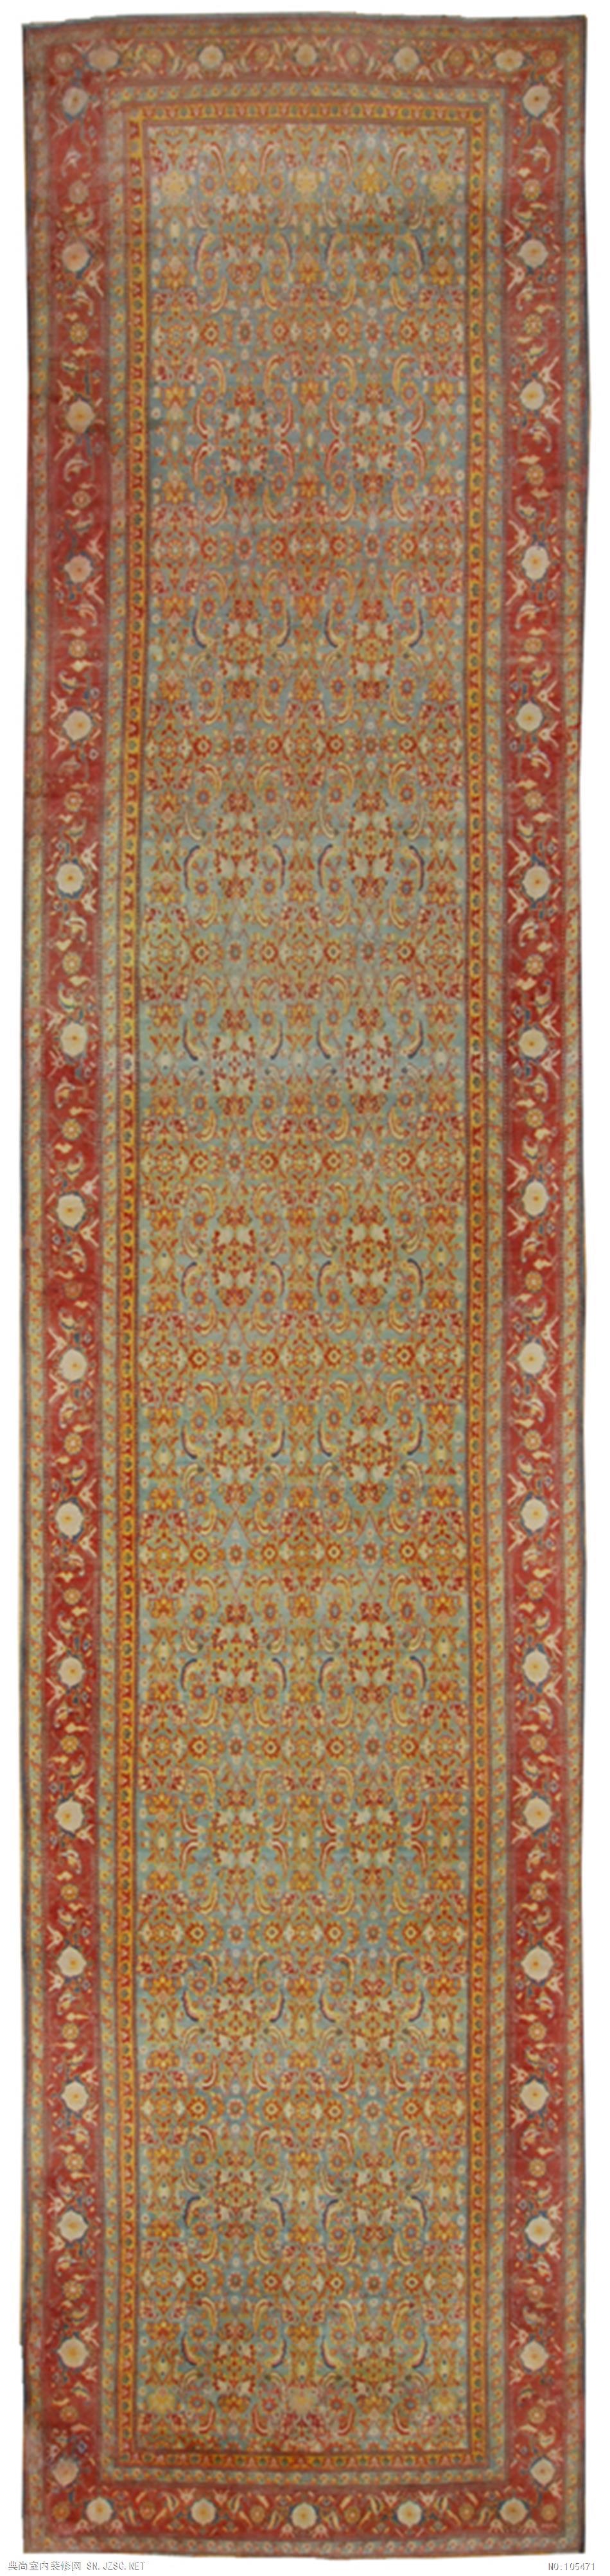 欧式风格地毯 (49)